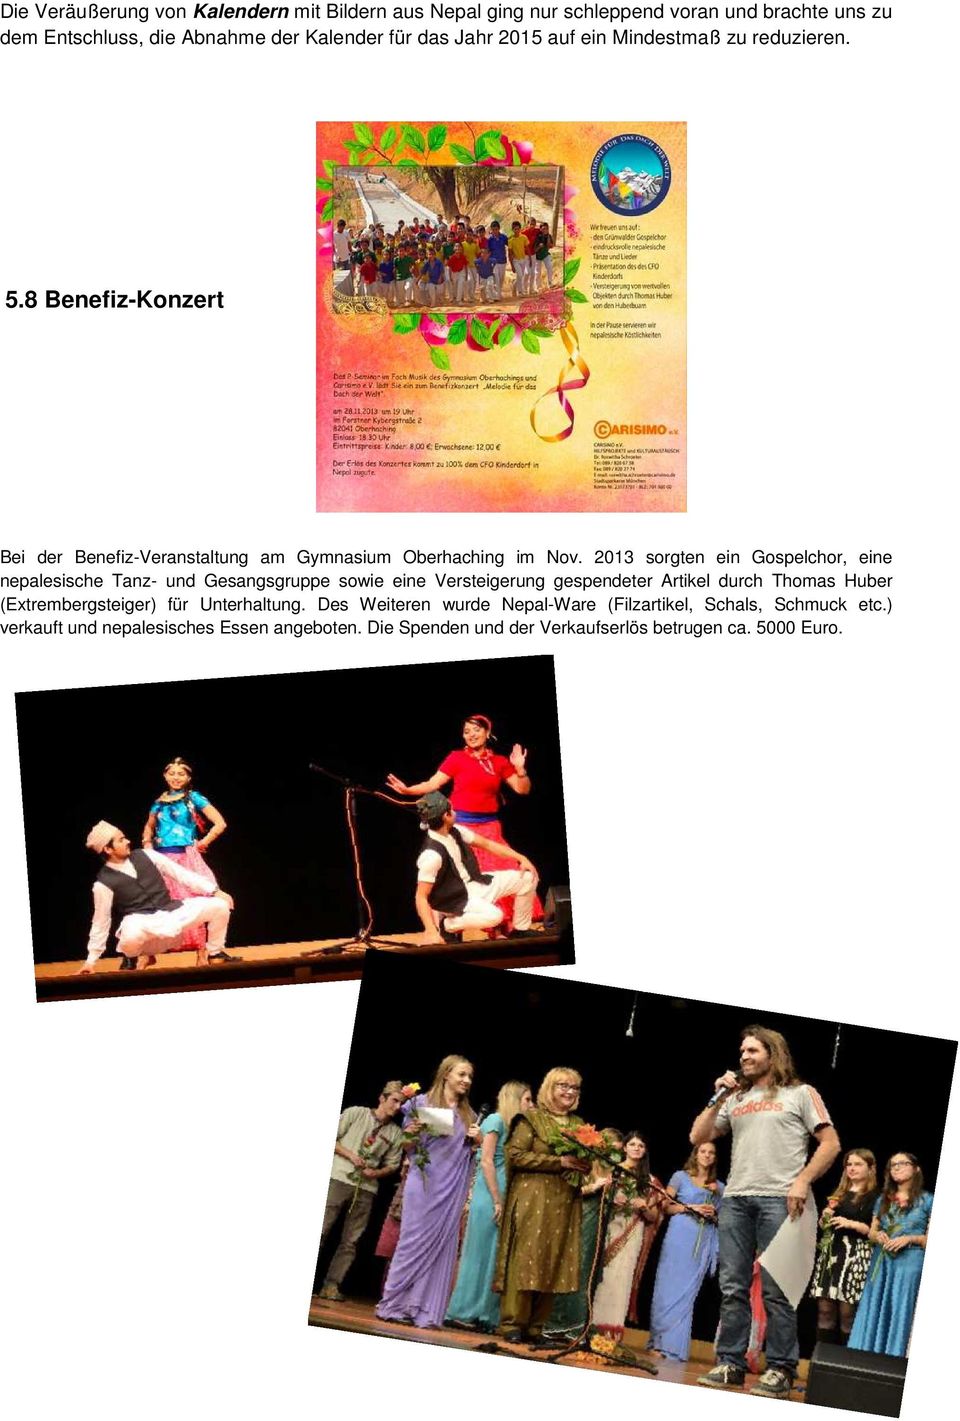 2013 sorgten ein Gospelchor, eine nepalesische Tanz- und Gesangsgruppe sowie eine Versteigerung gespendeter Artikel durch Thomas Huber